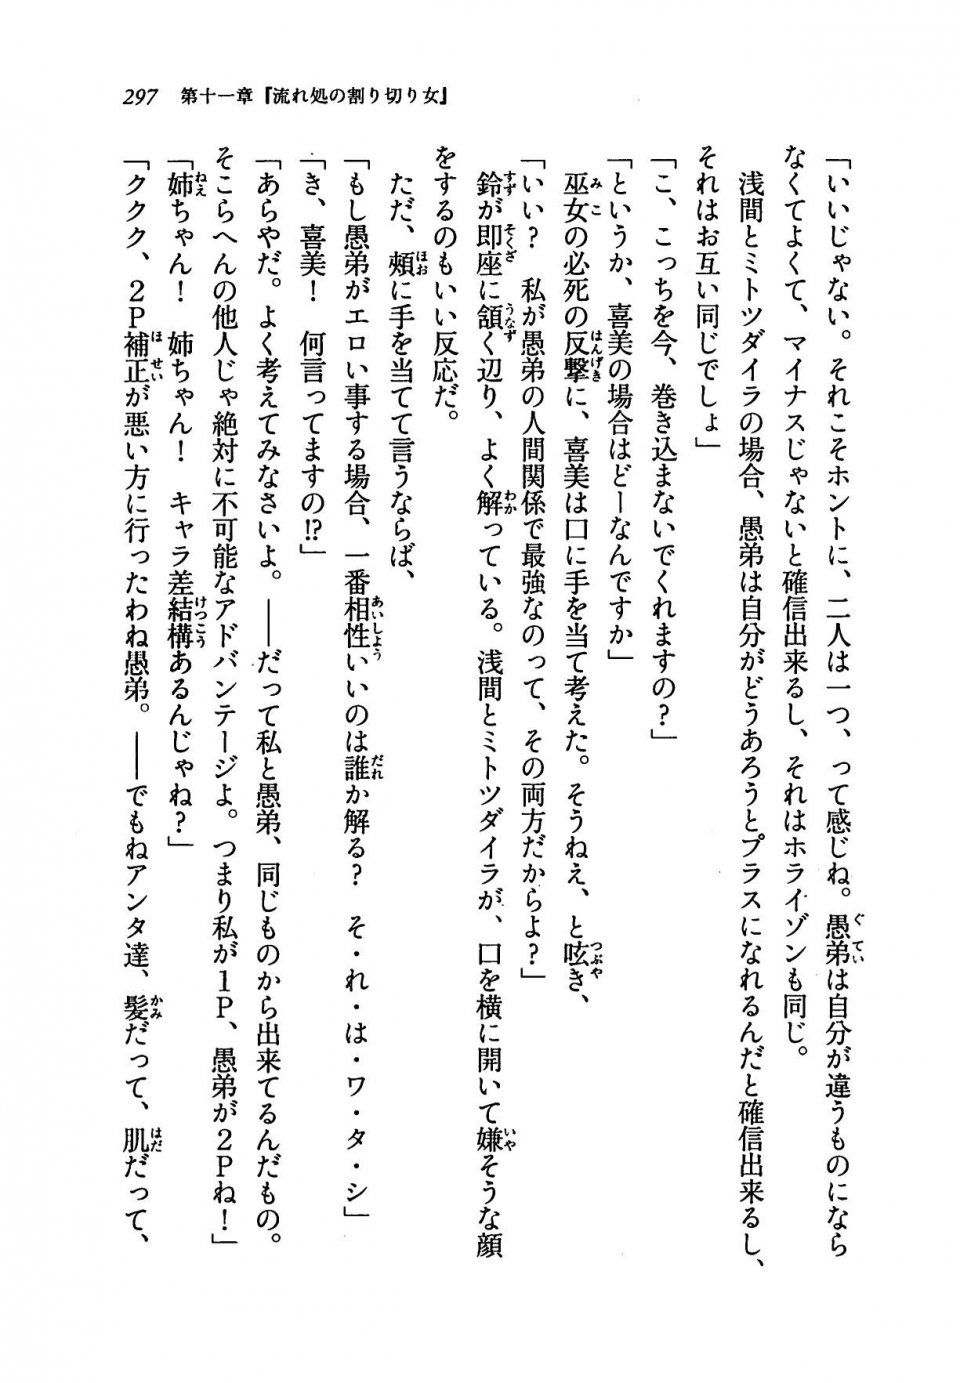 Kyoukai Senjou no Horizon LN Vol 19(8A) - Photo #297